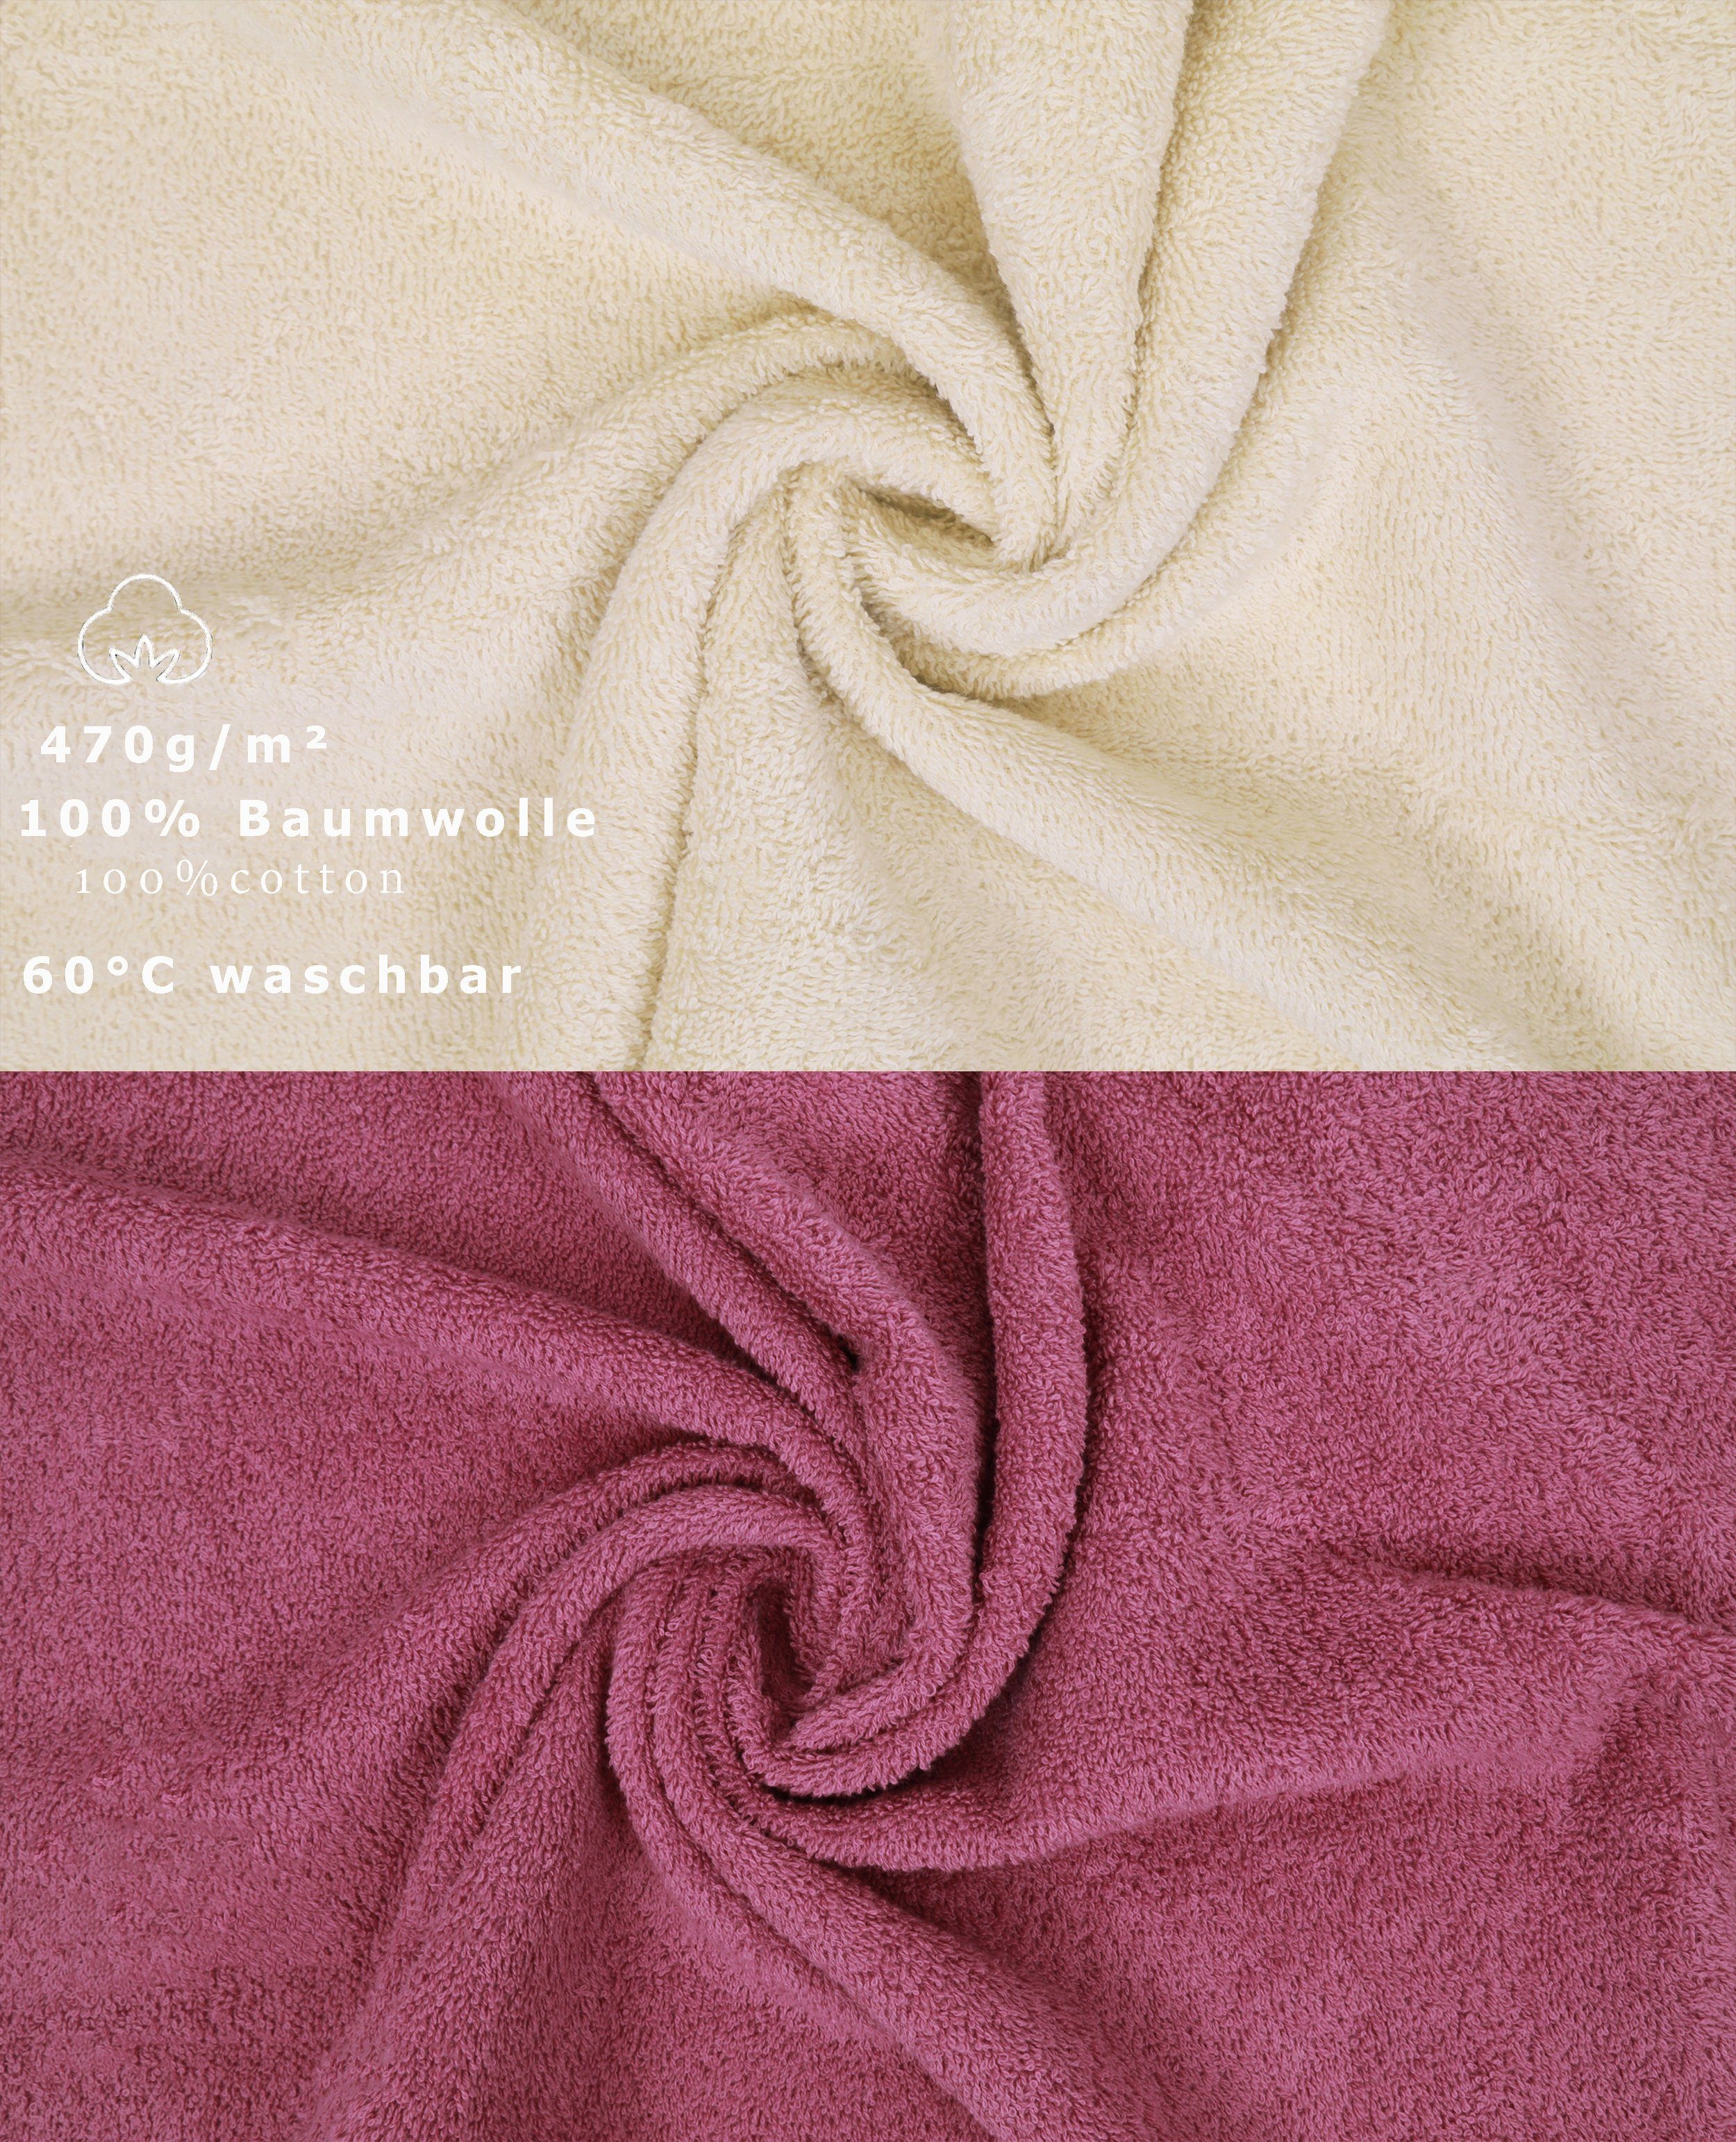 Betz Handtuch Set 12-tlg. Handtuch Set Baumwolle, Premium Farbe (12-tlg) 100% Sand/Beere